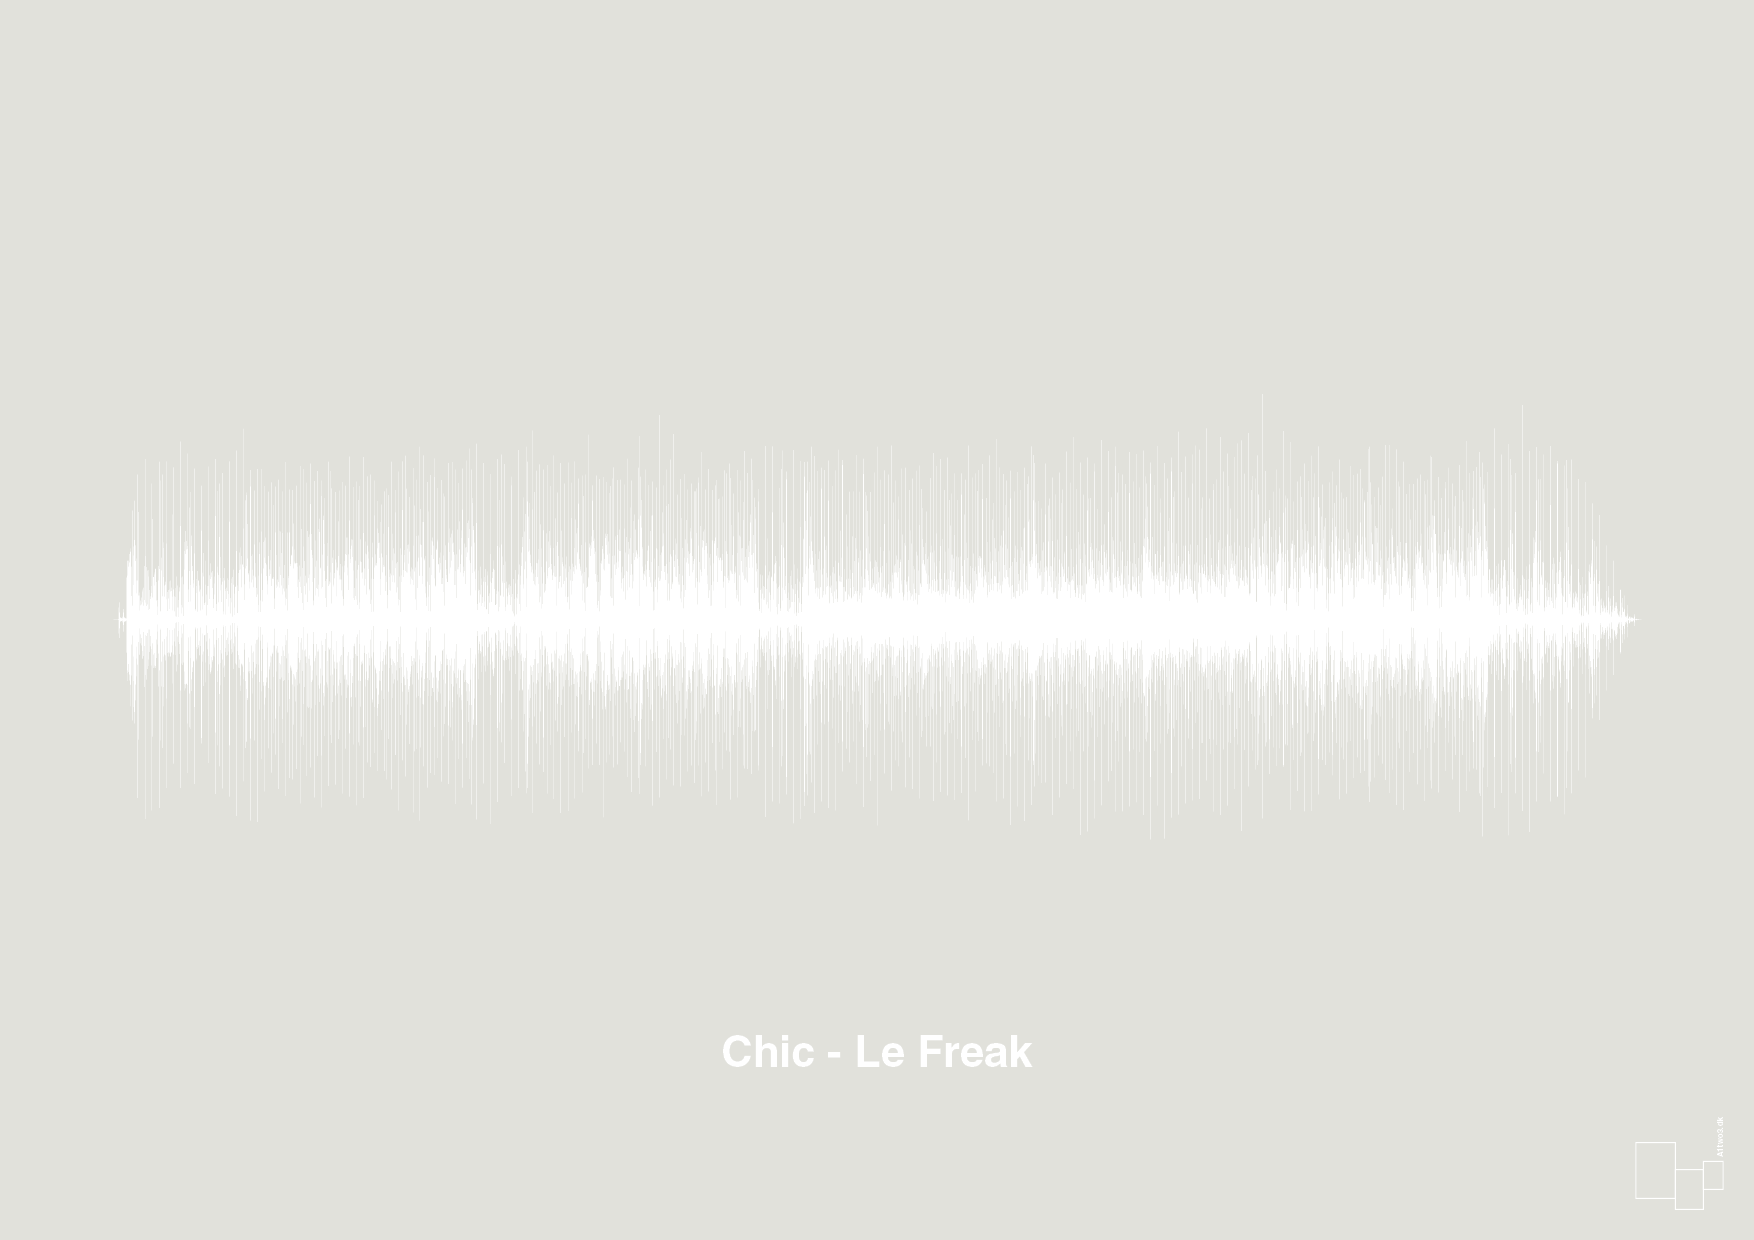 chic - le freak - Plakat med Musik i Painters White